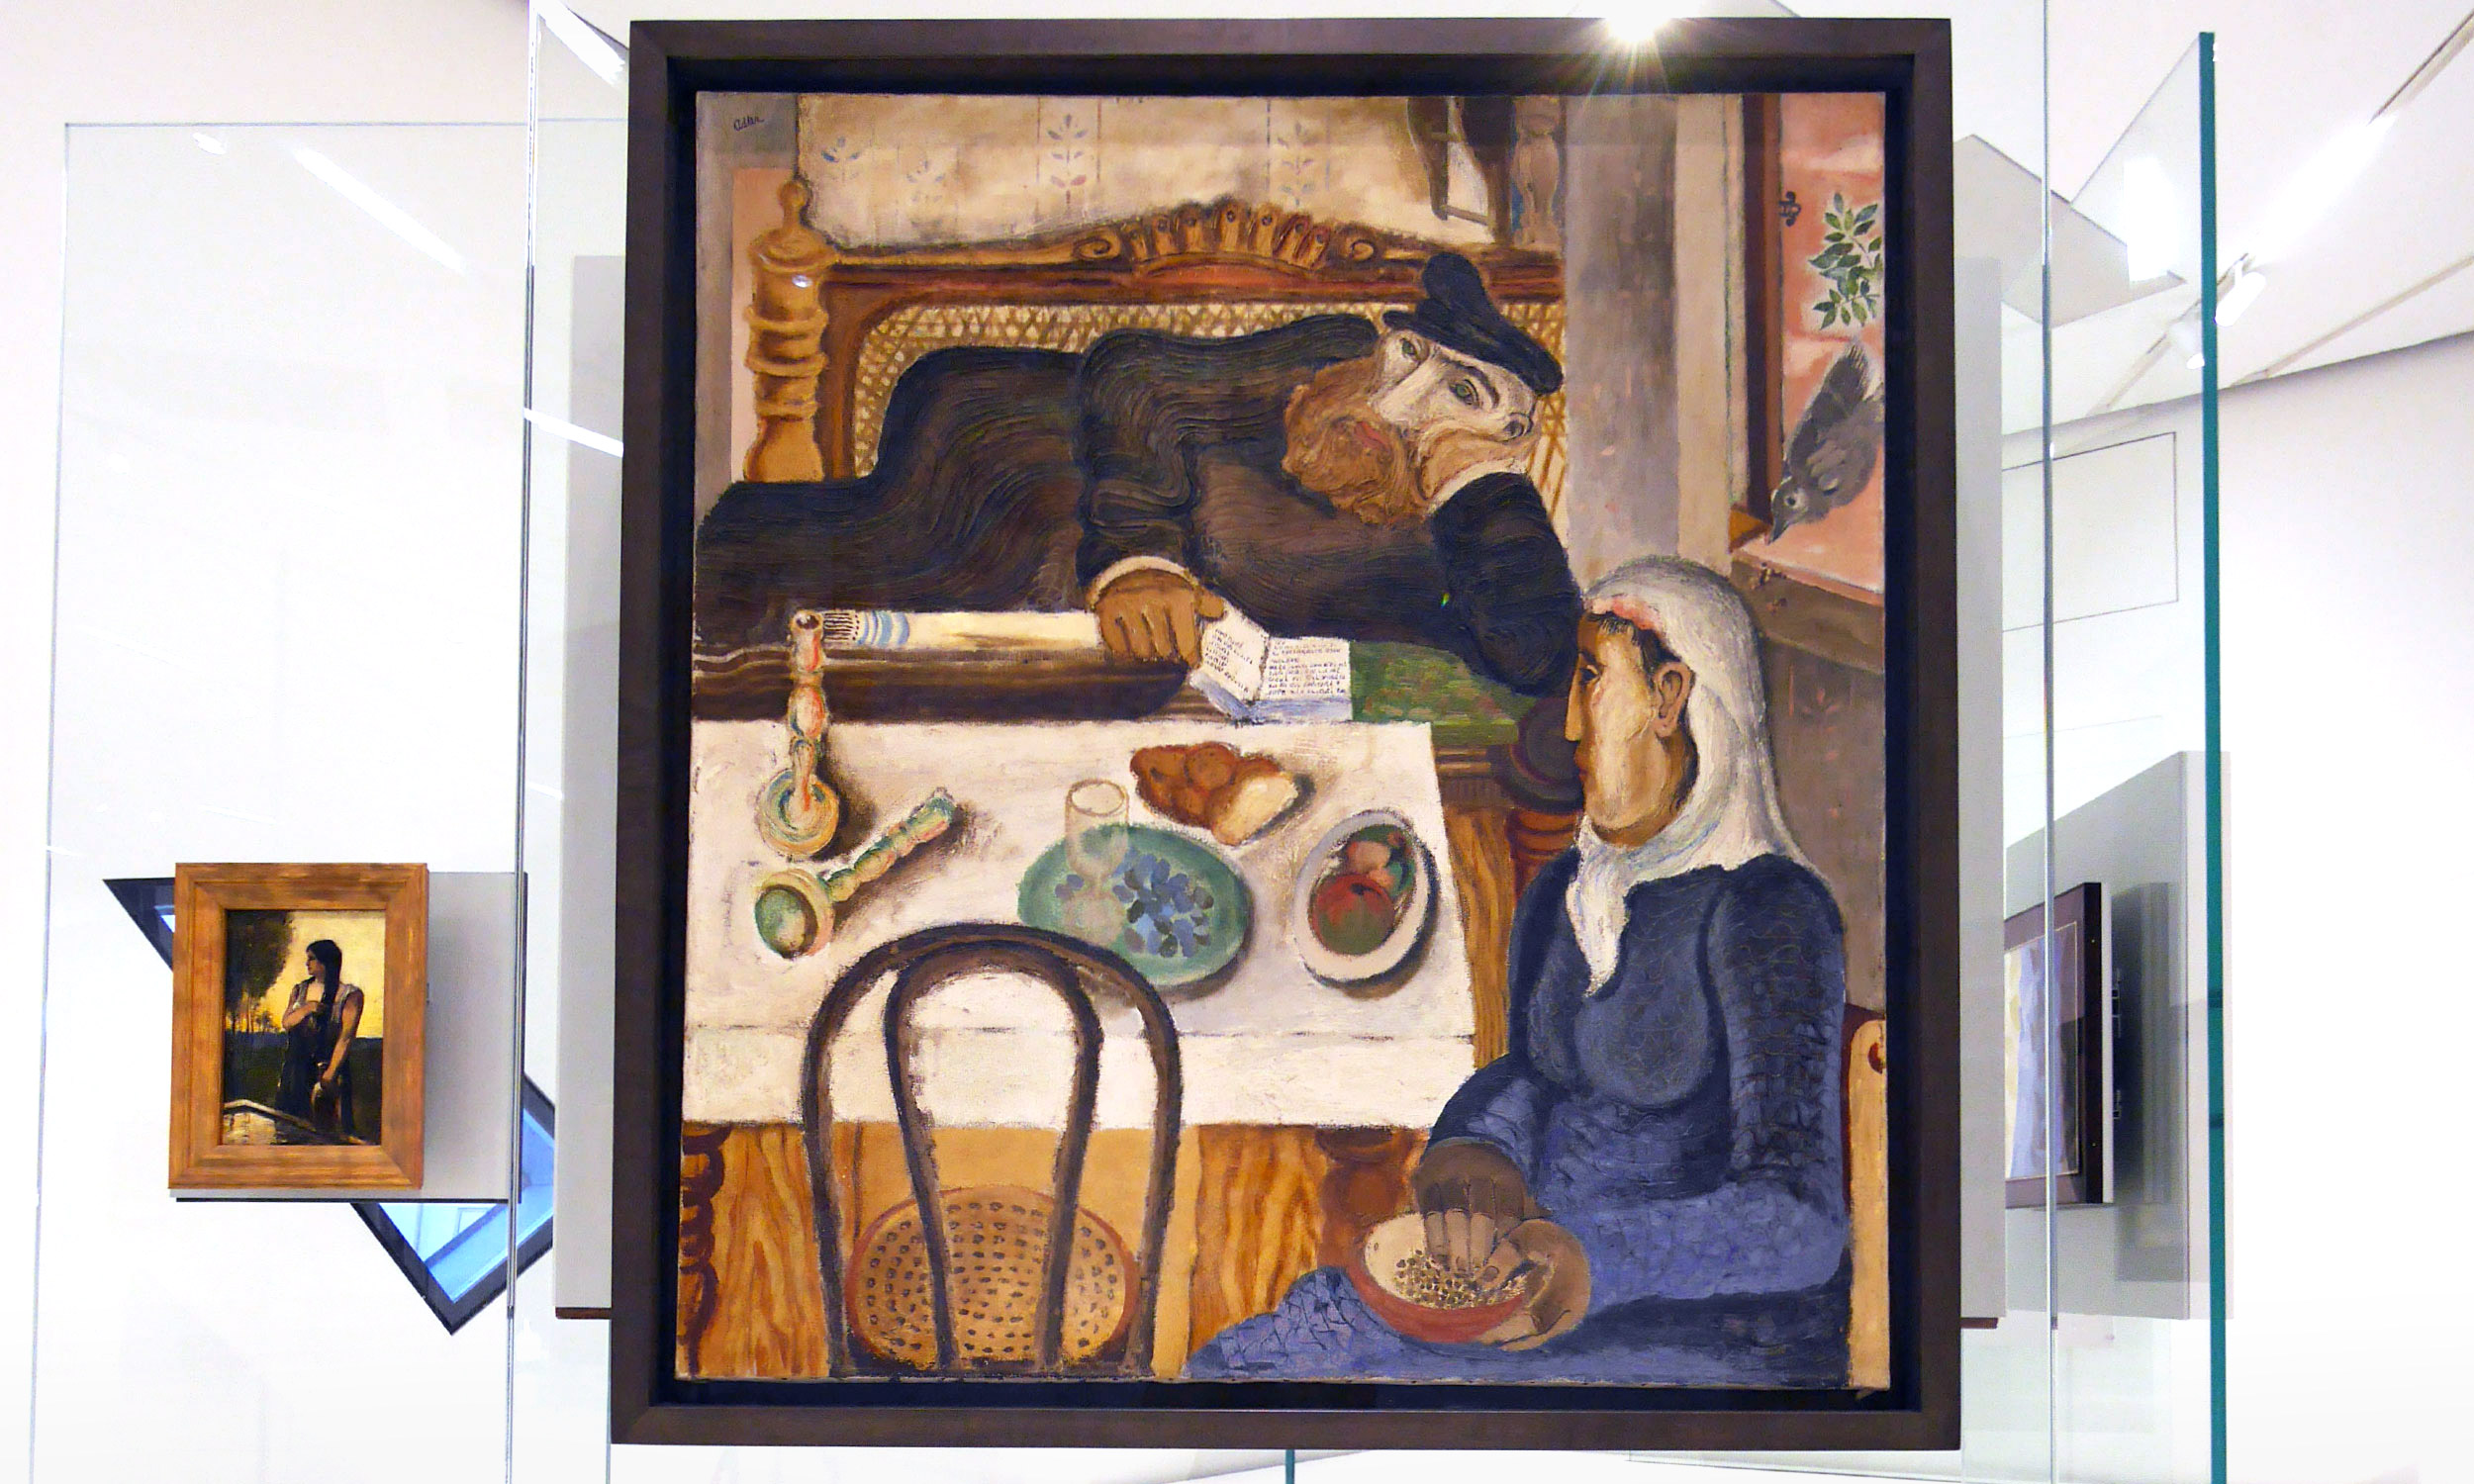 Foto vom Gemälde „Sabbat“ von Janker Adler in Jüdischen Museum, Berlin. Das Kunstwerk hängt an einer Glaswand, die in der Mitte des Raumes steht. Links daneben erkennt man ein weiteres viel kleineres Bild vom selben Künstler, das eine Frau zeigt.